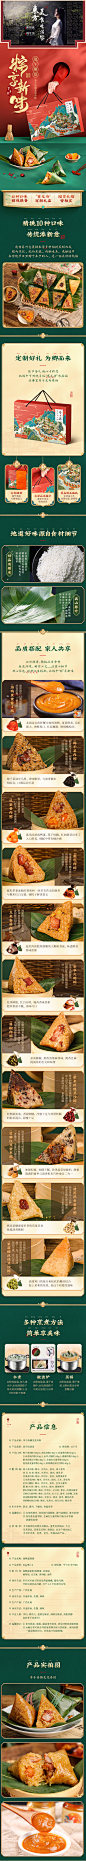 李子柒腾龙竞舟粽子端午节礼盒装特产蛋黄肉粽蜜枣甜粽子10种口味-tmall